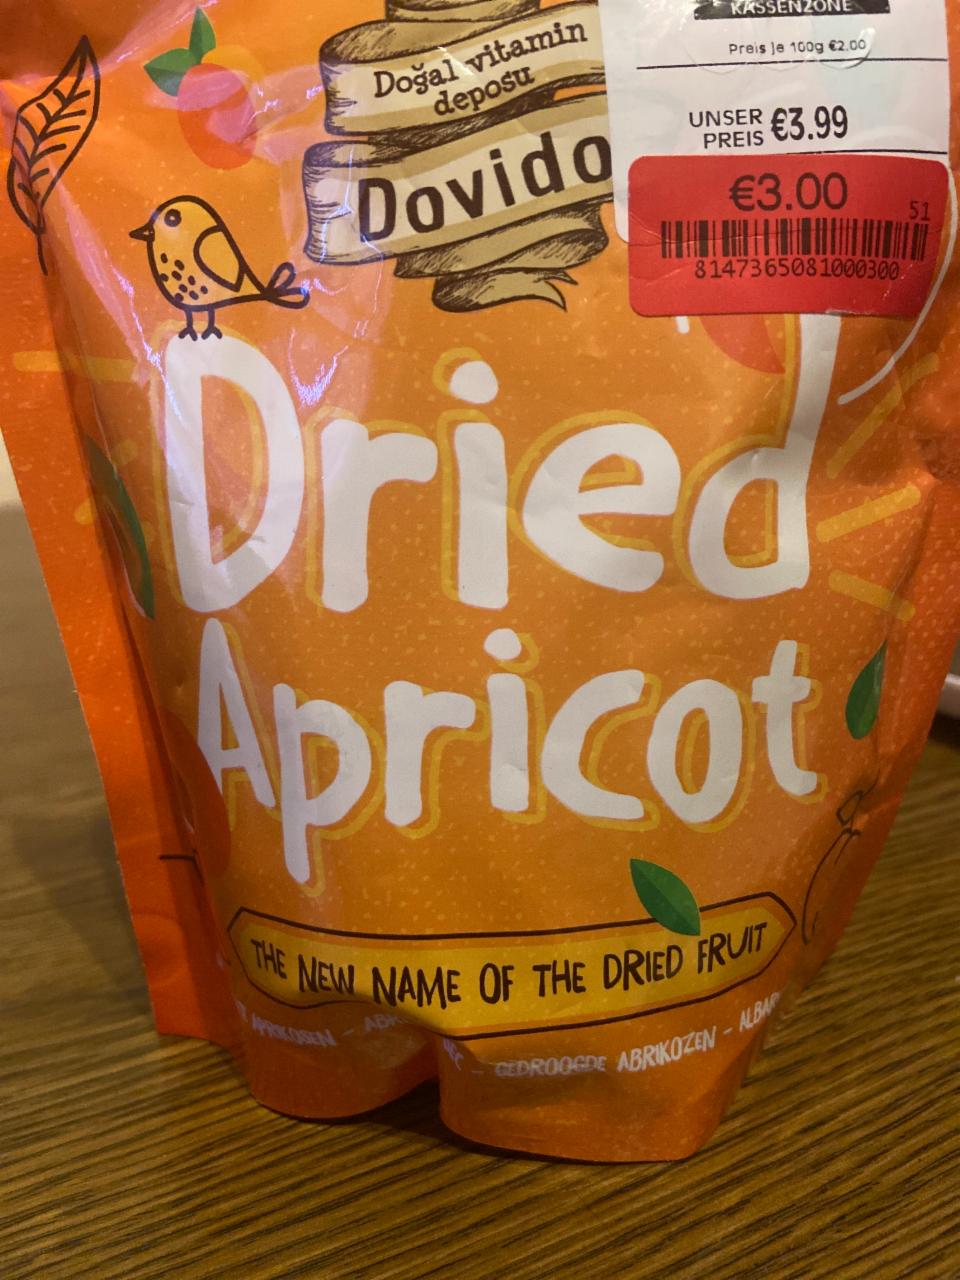 Фото - Курага Dried Apricot Dovido